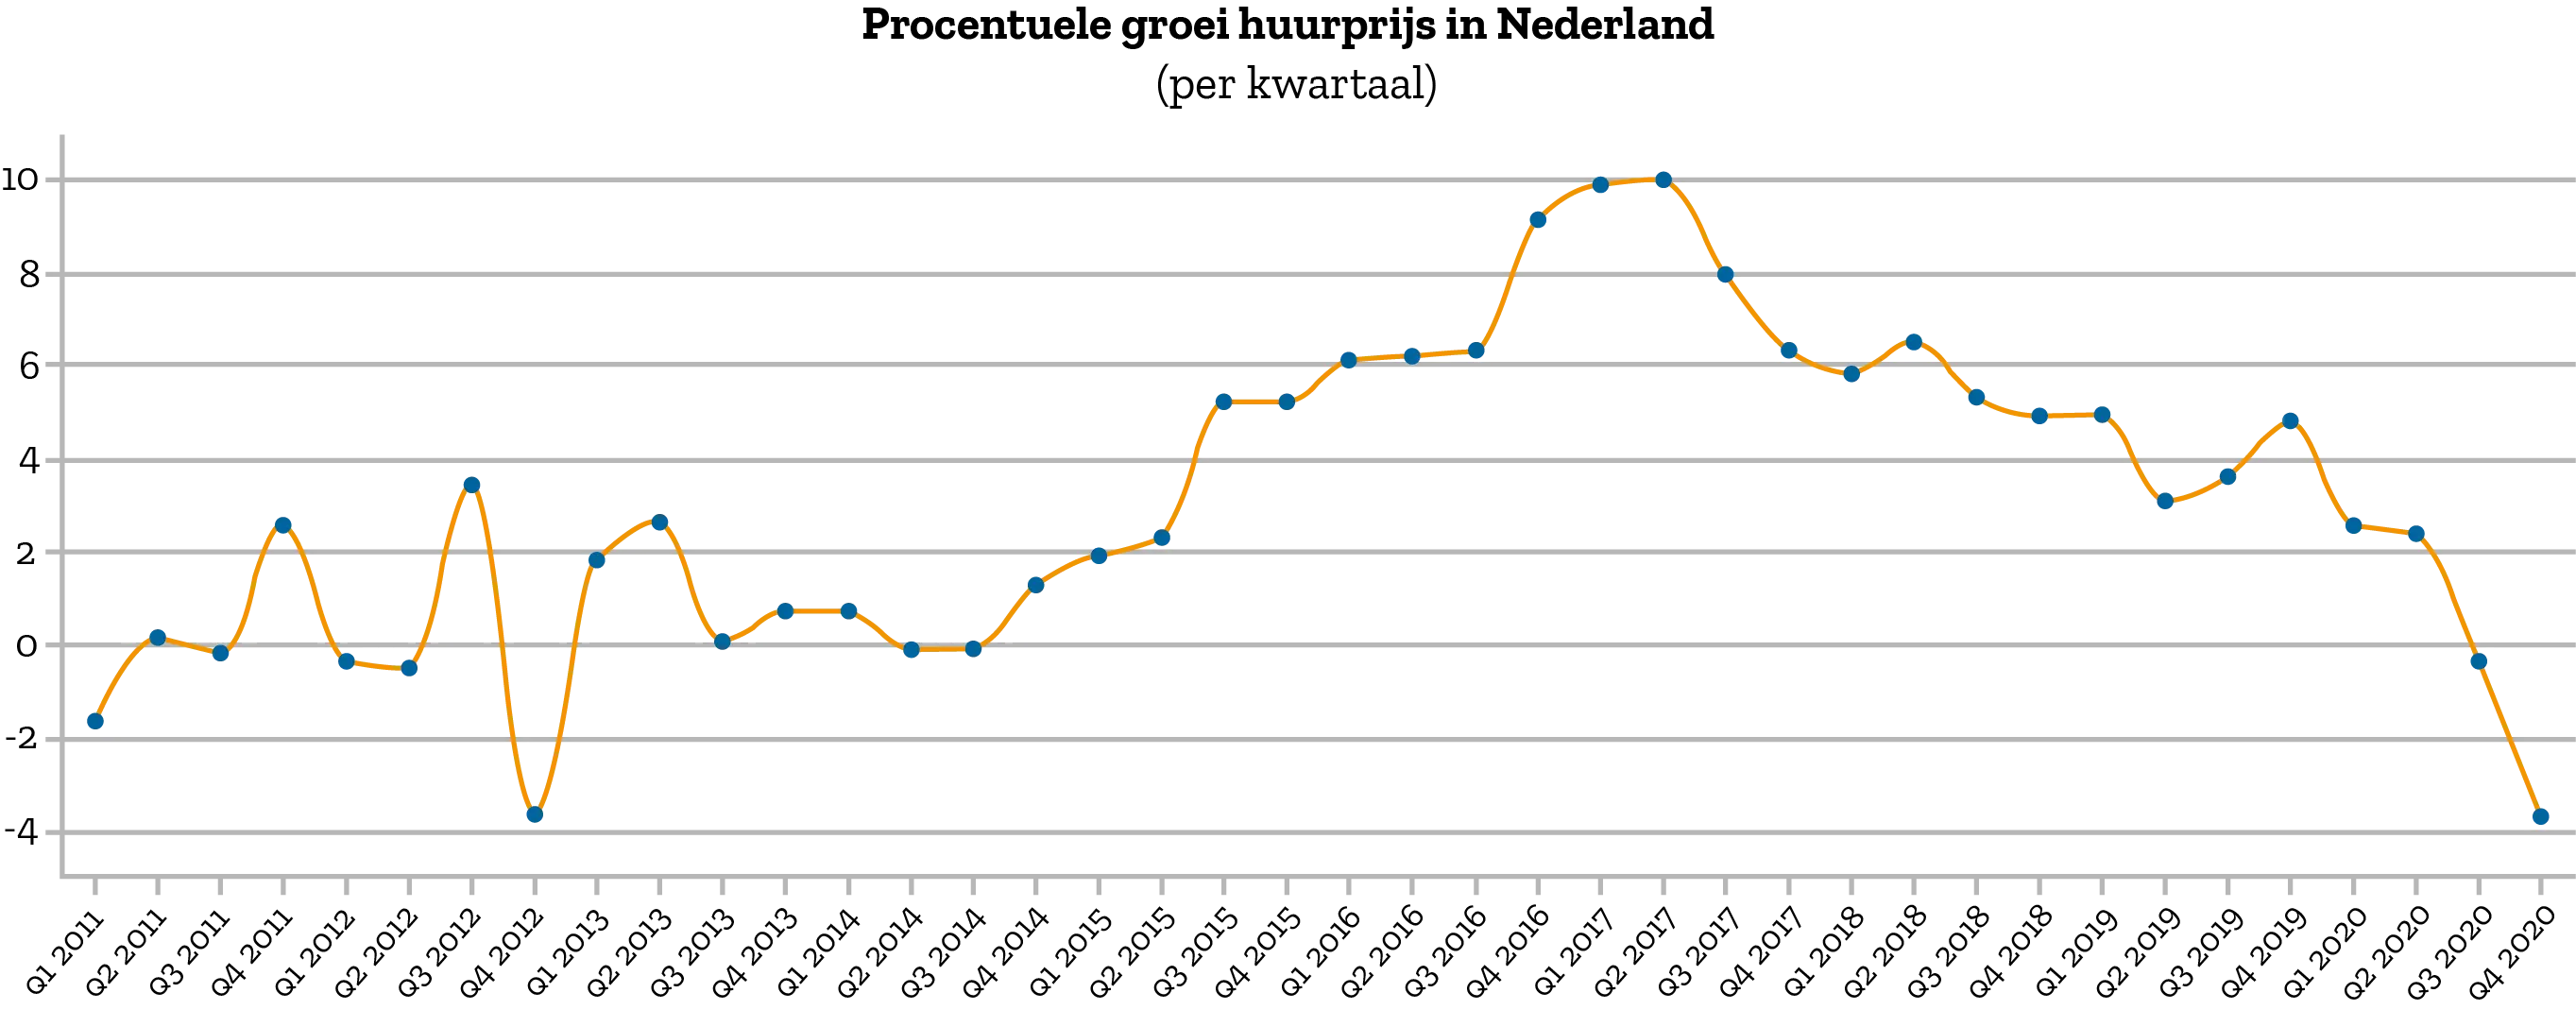 procentuele-groei-huurprijs-nederland-2020